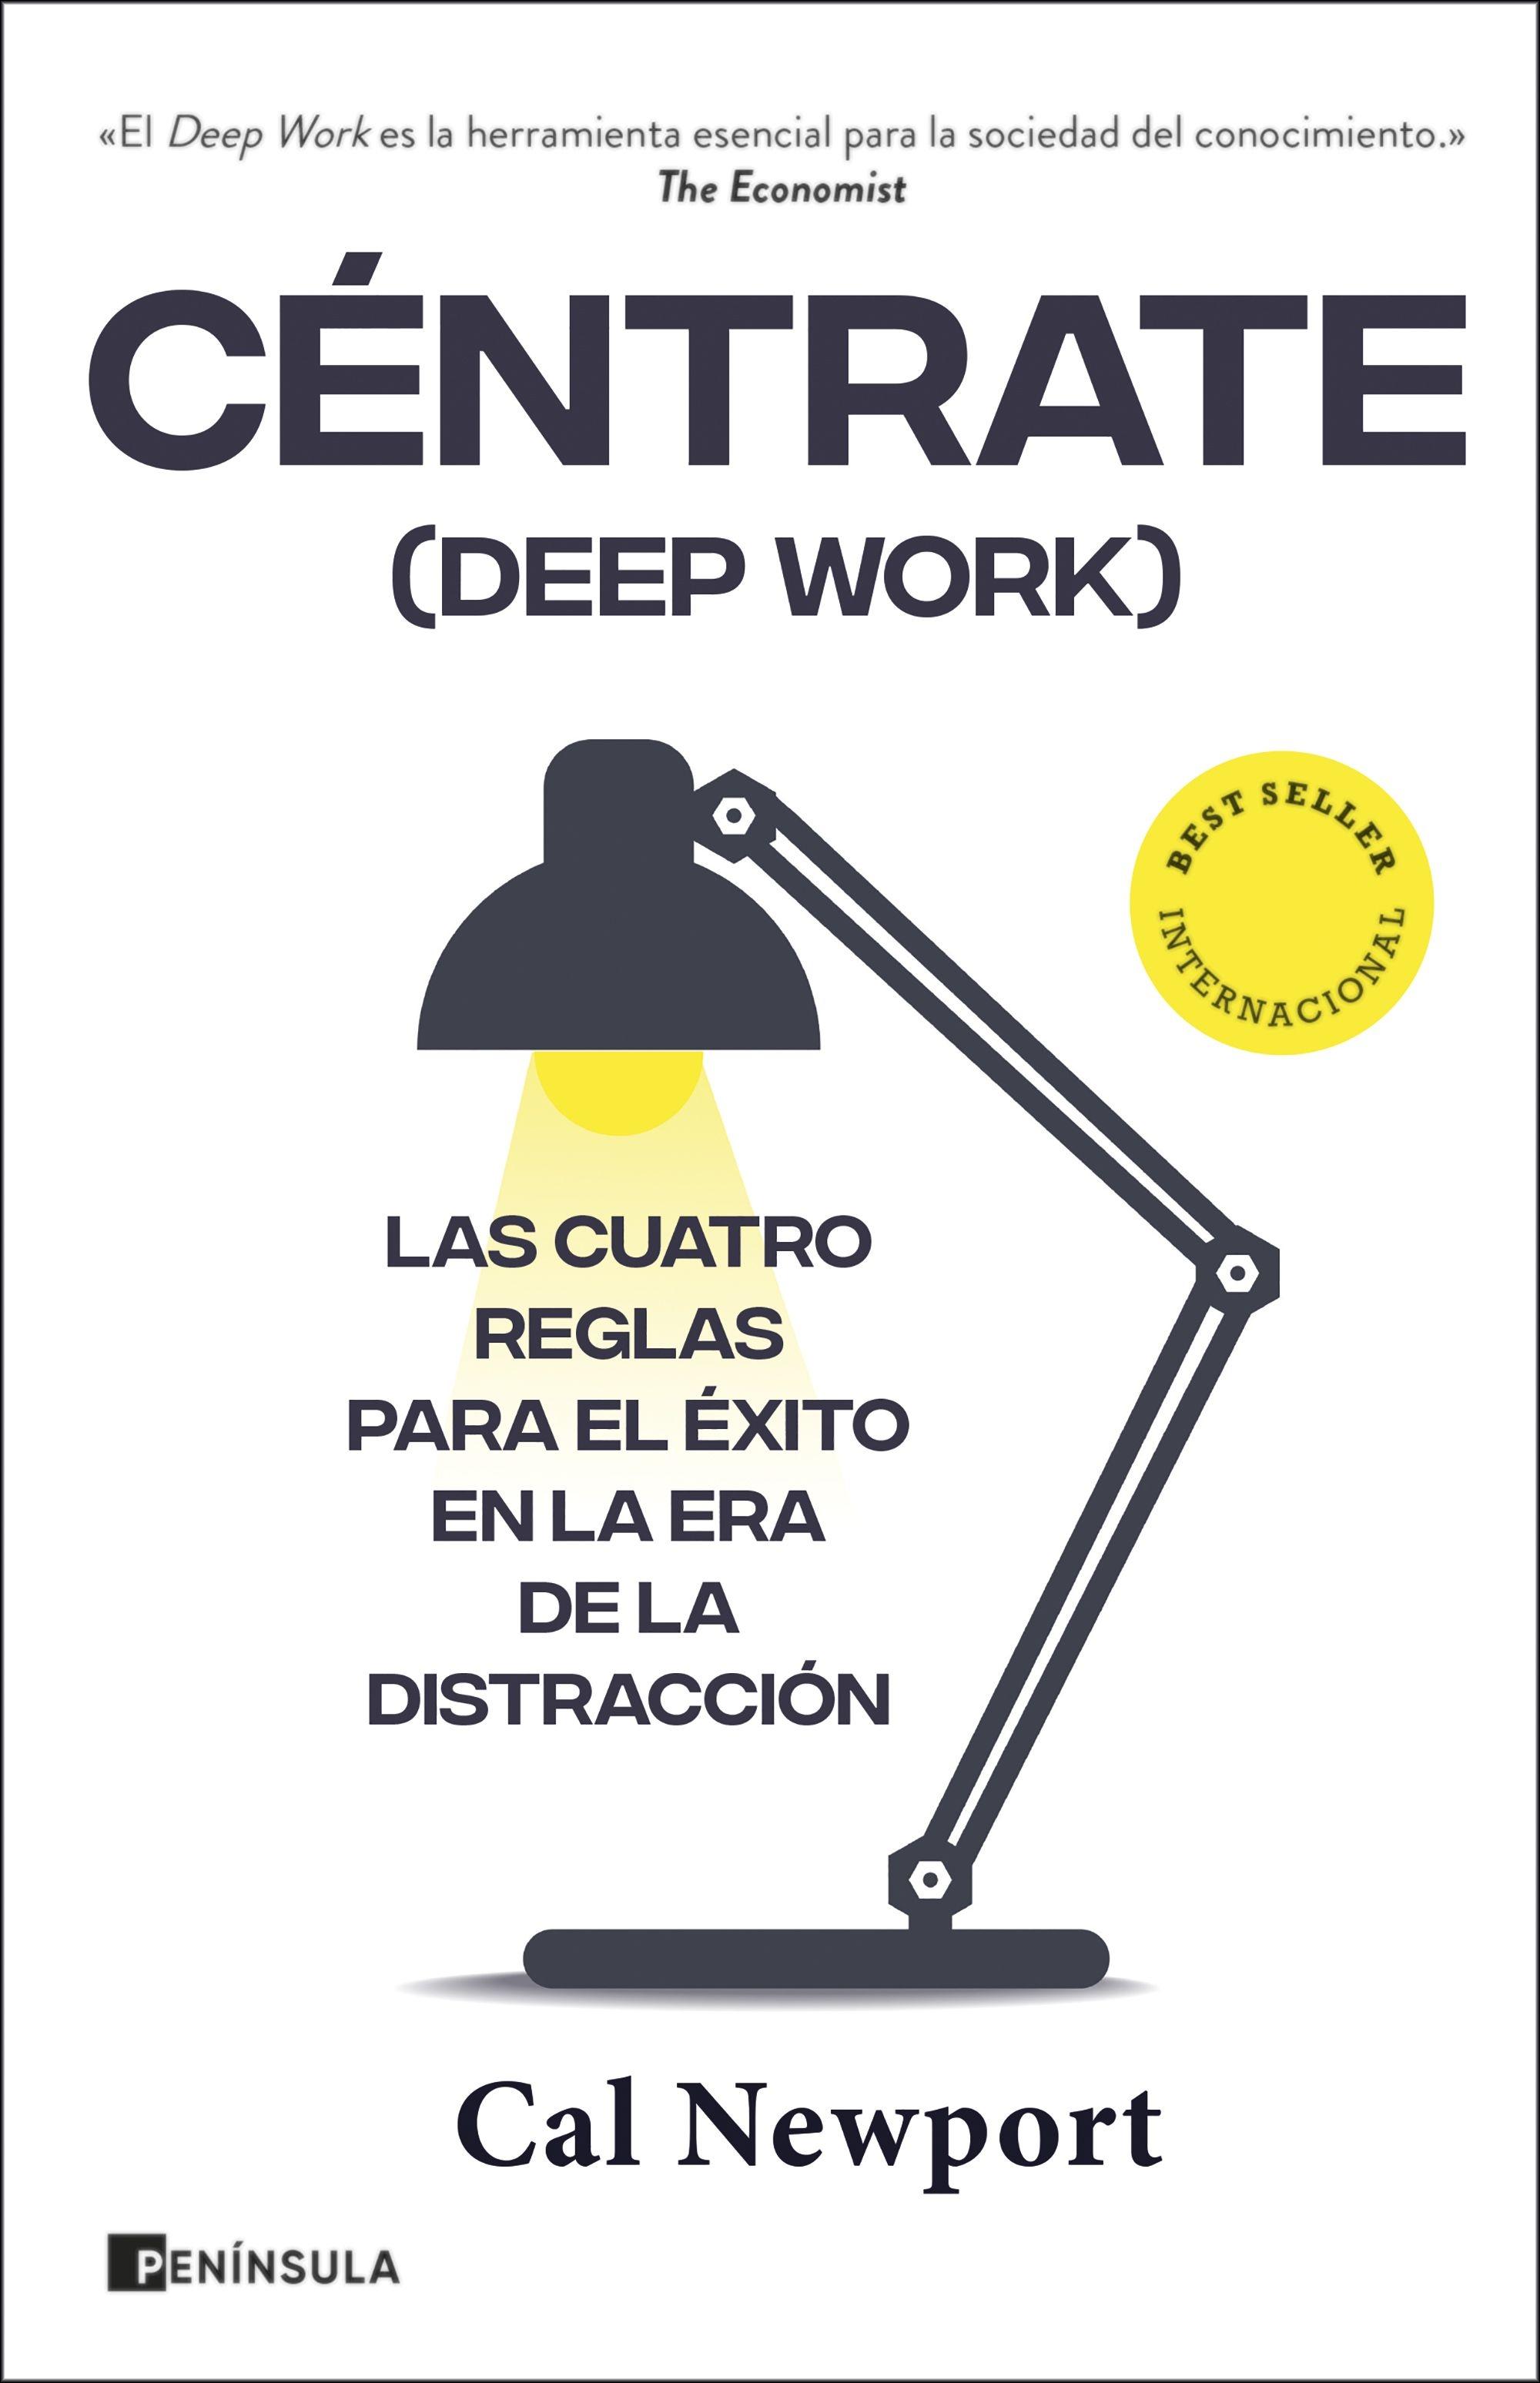 Céntrate (Deep Work) "Las cuatro reglas para el éxito en la era de la distracción"